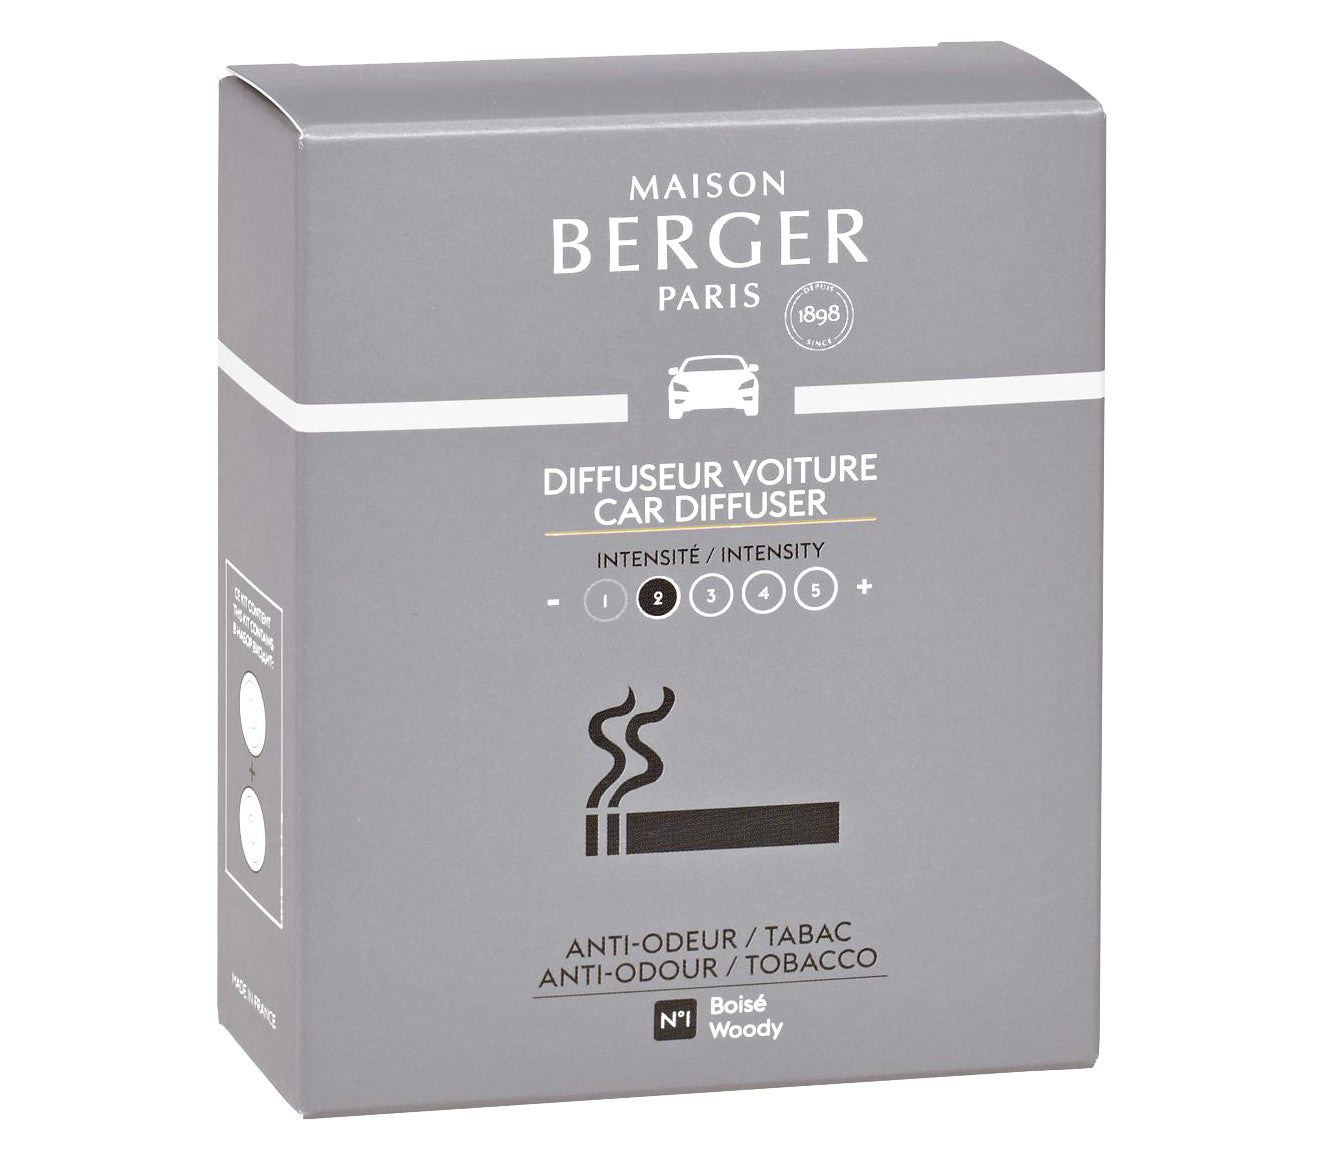 Coffret de 2 recharges pour diffuseur voiture Anti Odeur Tabac    - Maison Berger Paris - Diffuseur de voiture - 